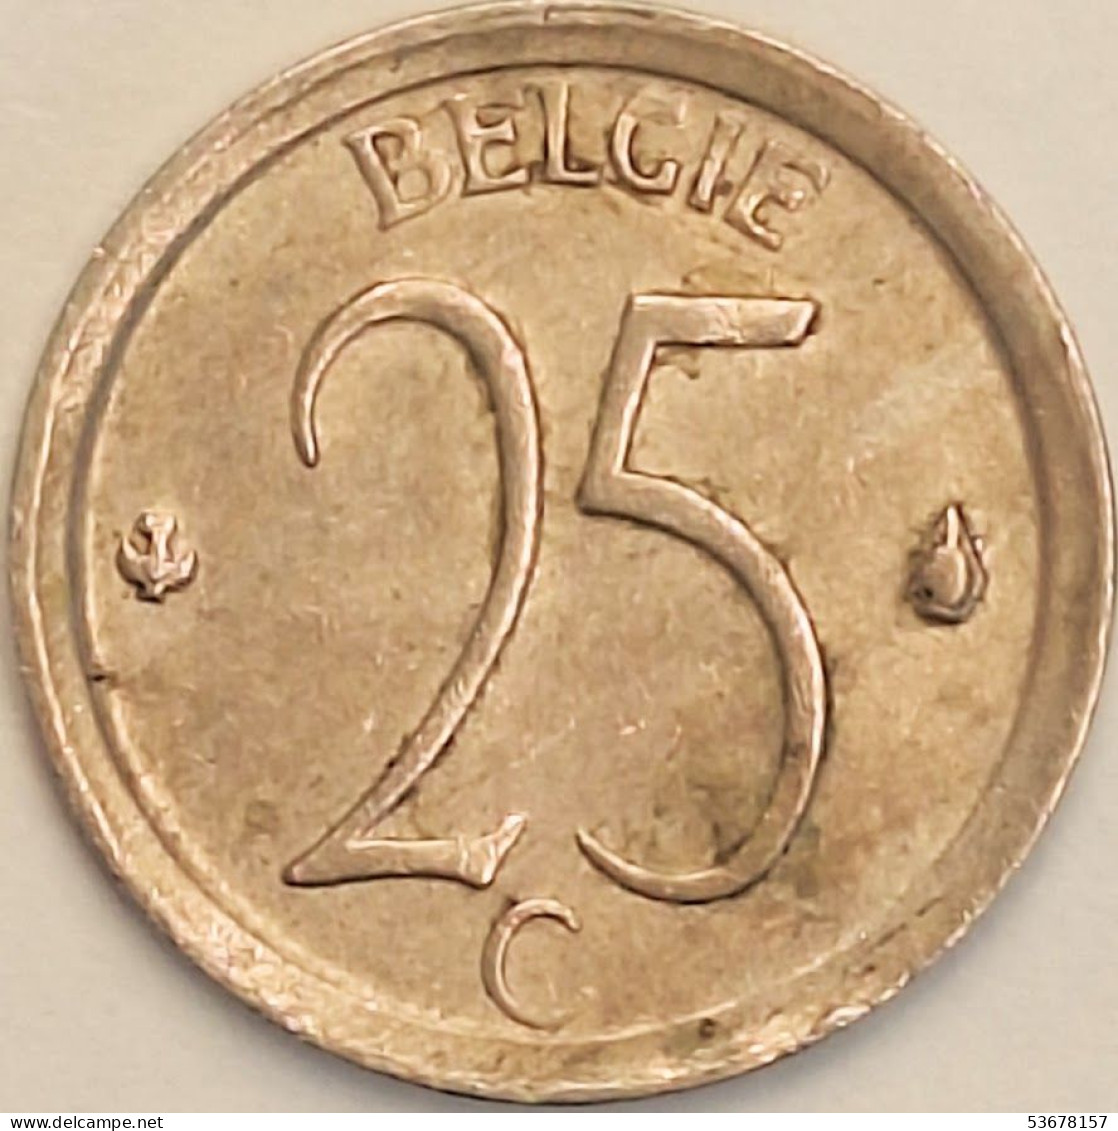 Belgium - 25 Centimes 1969, KM# 154.1 (#3085) - 25 Cents